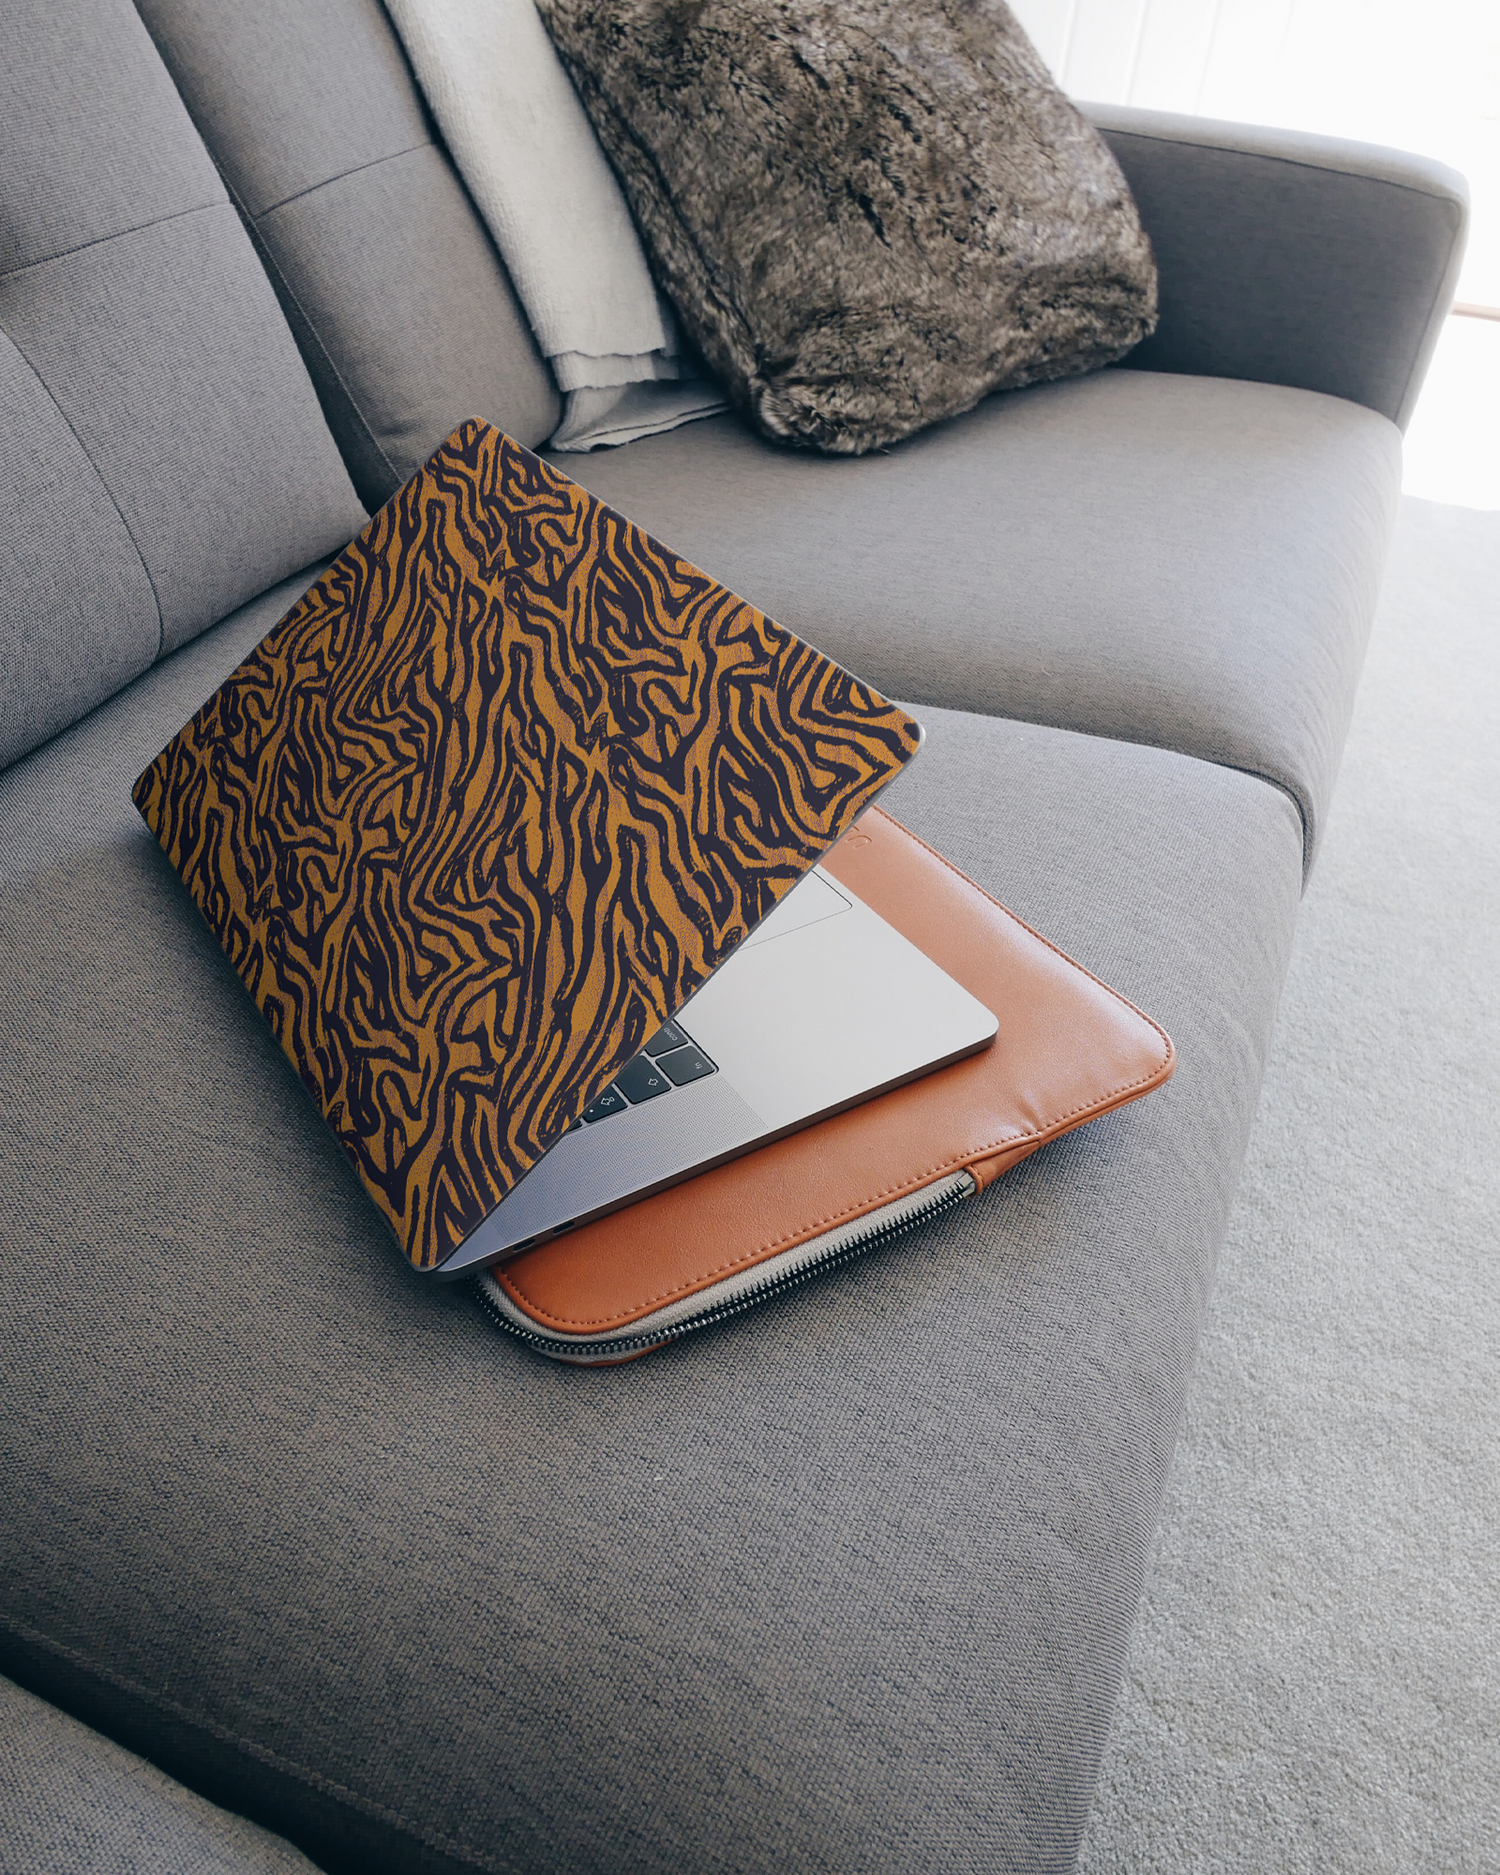 Tiger Zebra Skins Laptop Aufkleber für 15 Zoll Apple MacBooks auf dem Sofa